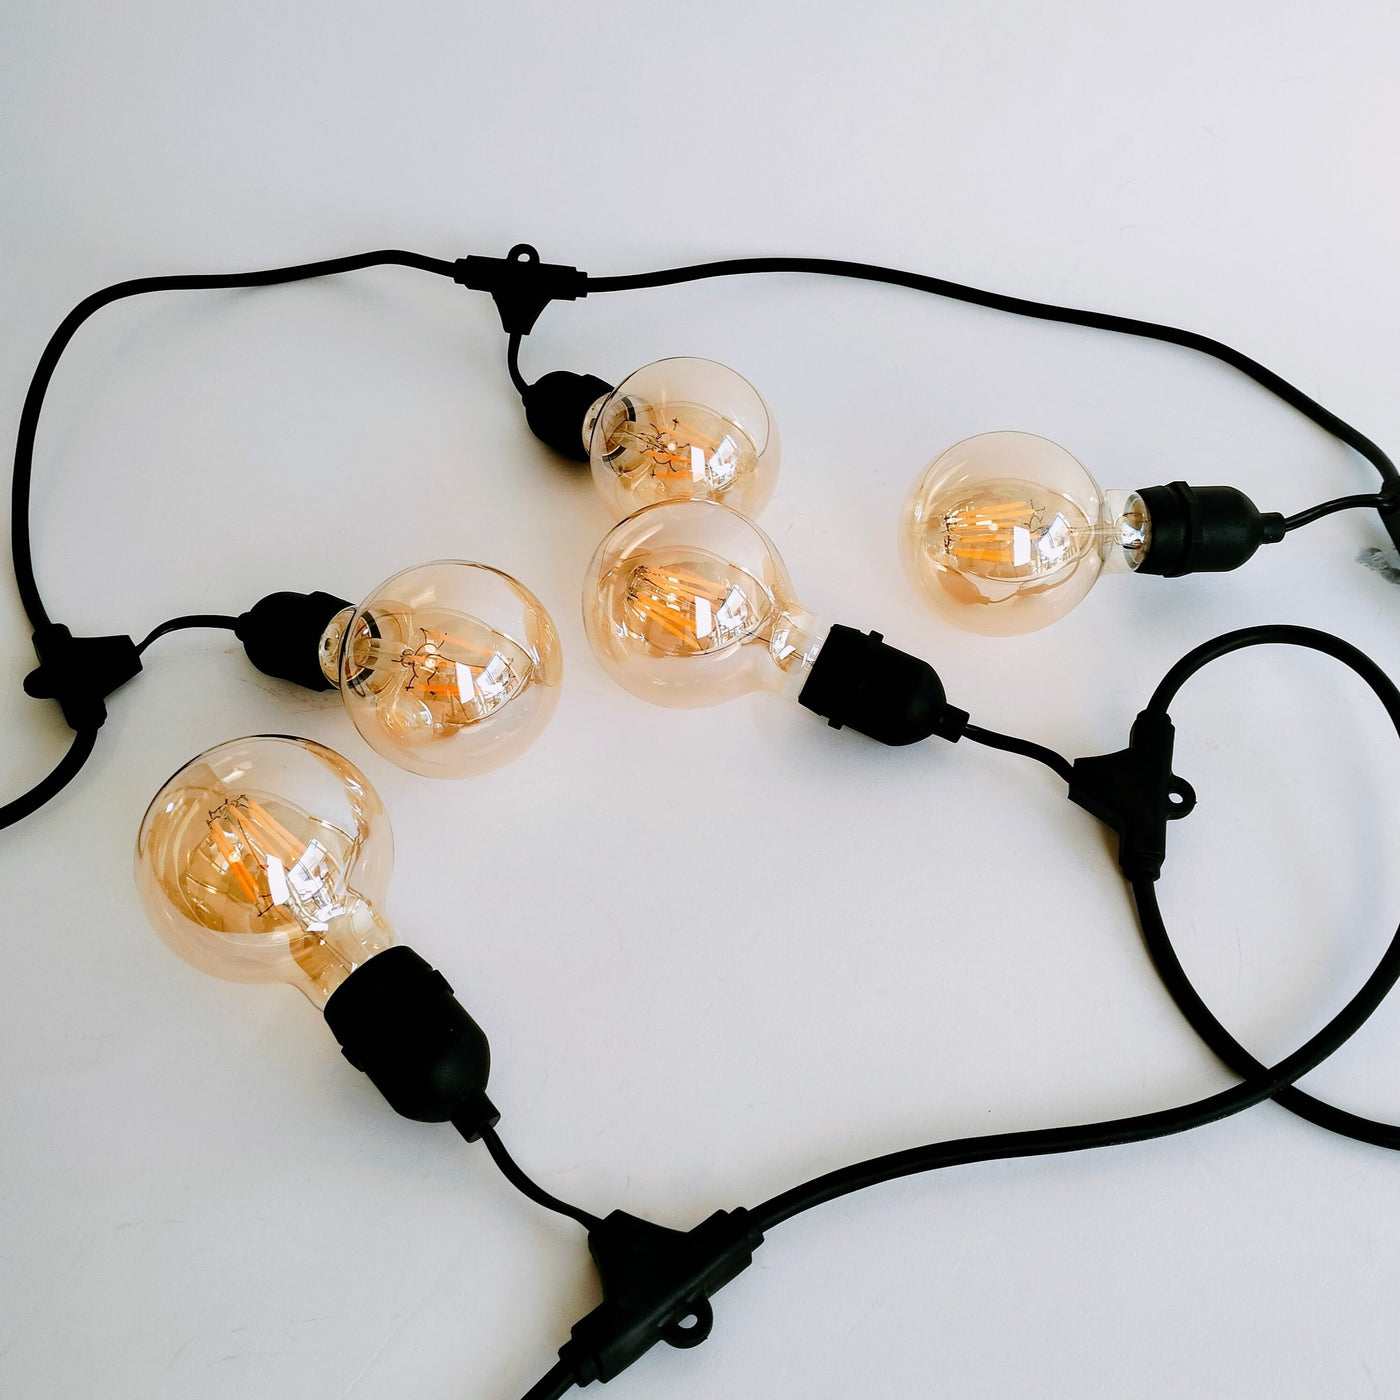 Drop Hang | 15m 15 Bulbs | G80 5w Amber Glass | Dimmable Festoon Lights